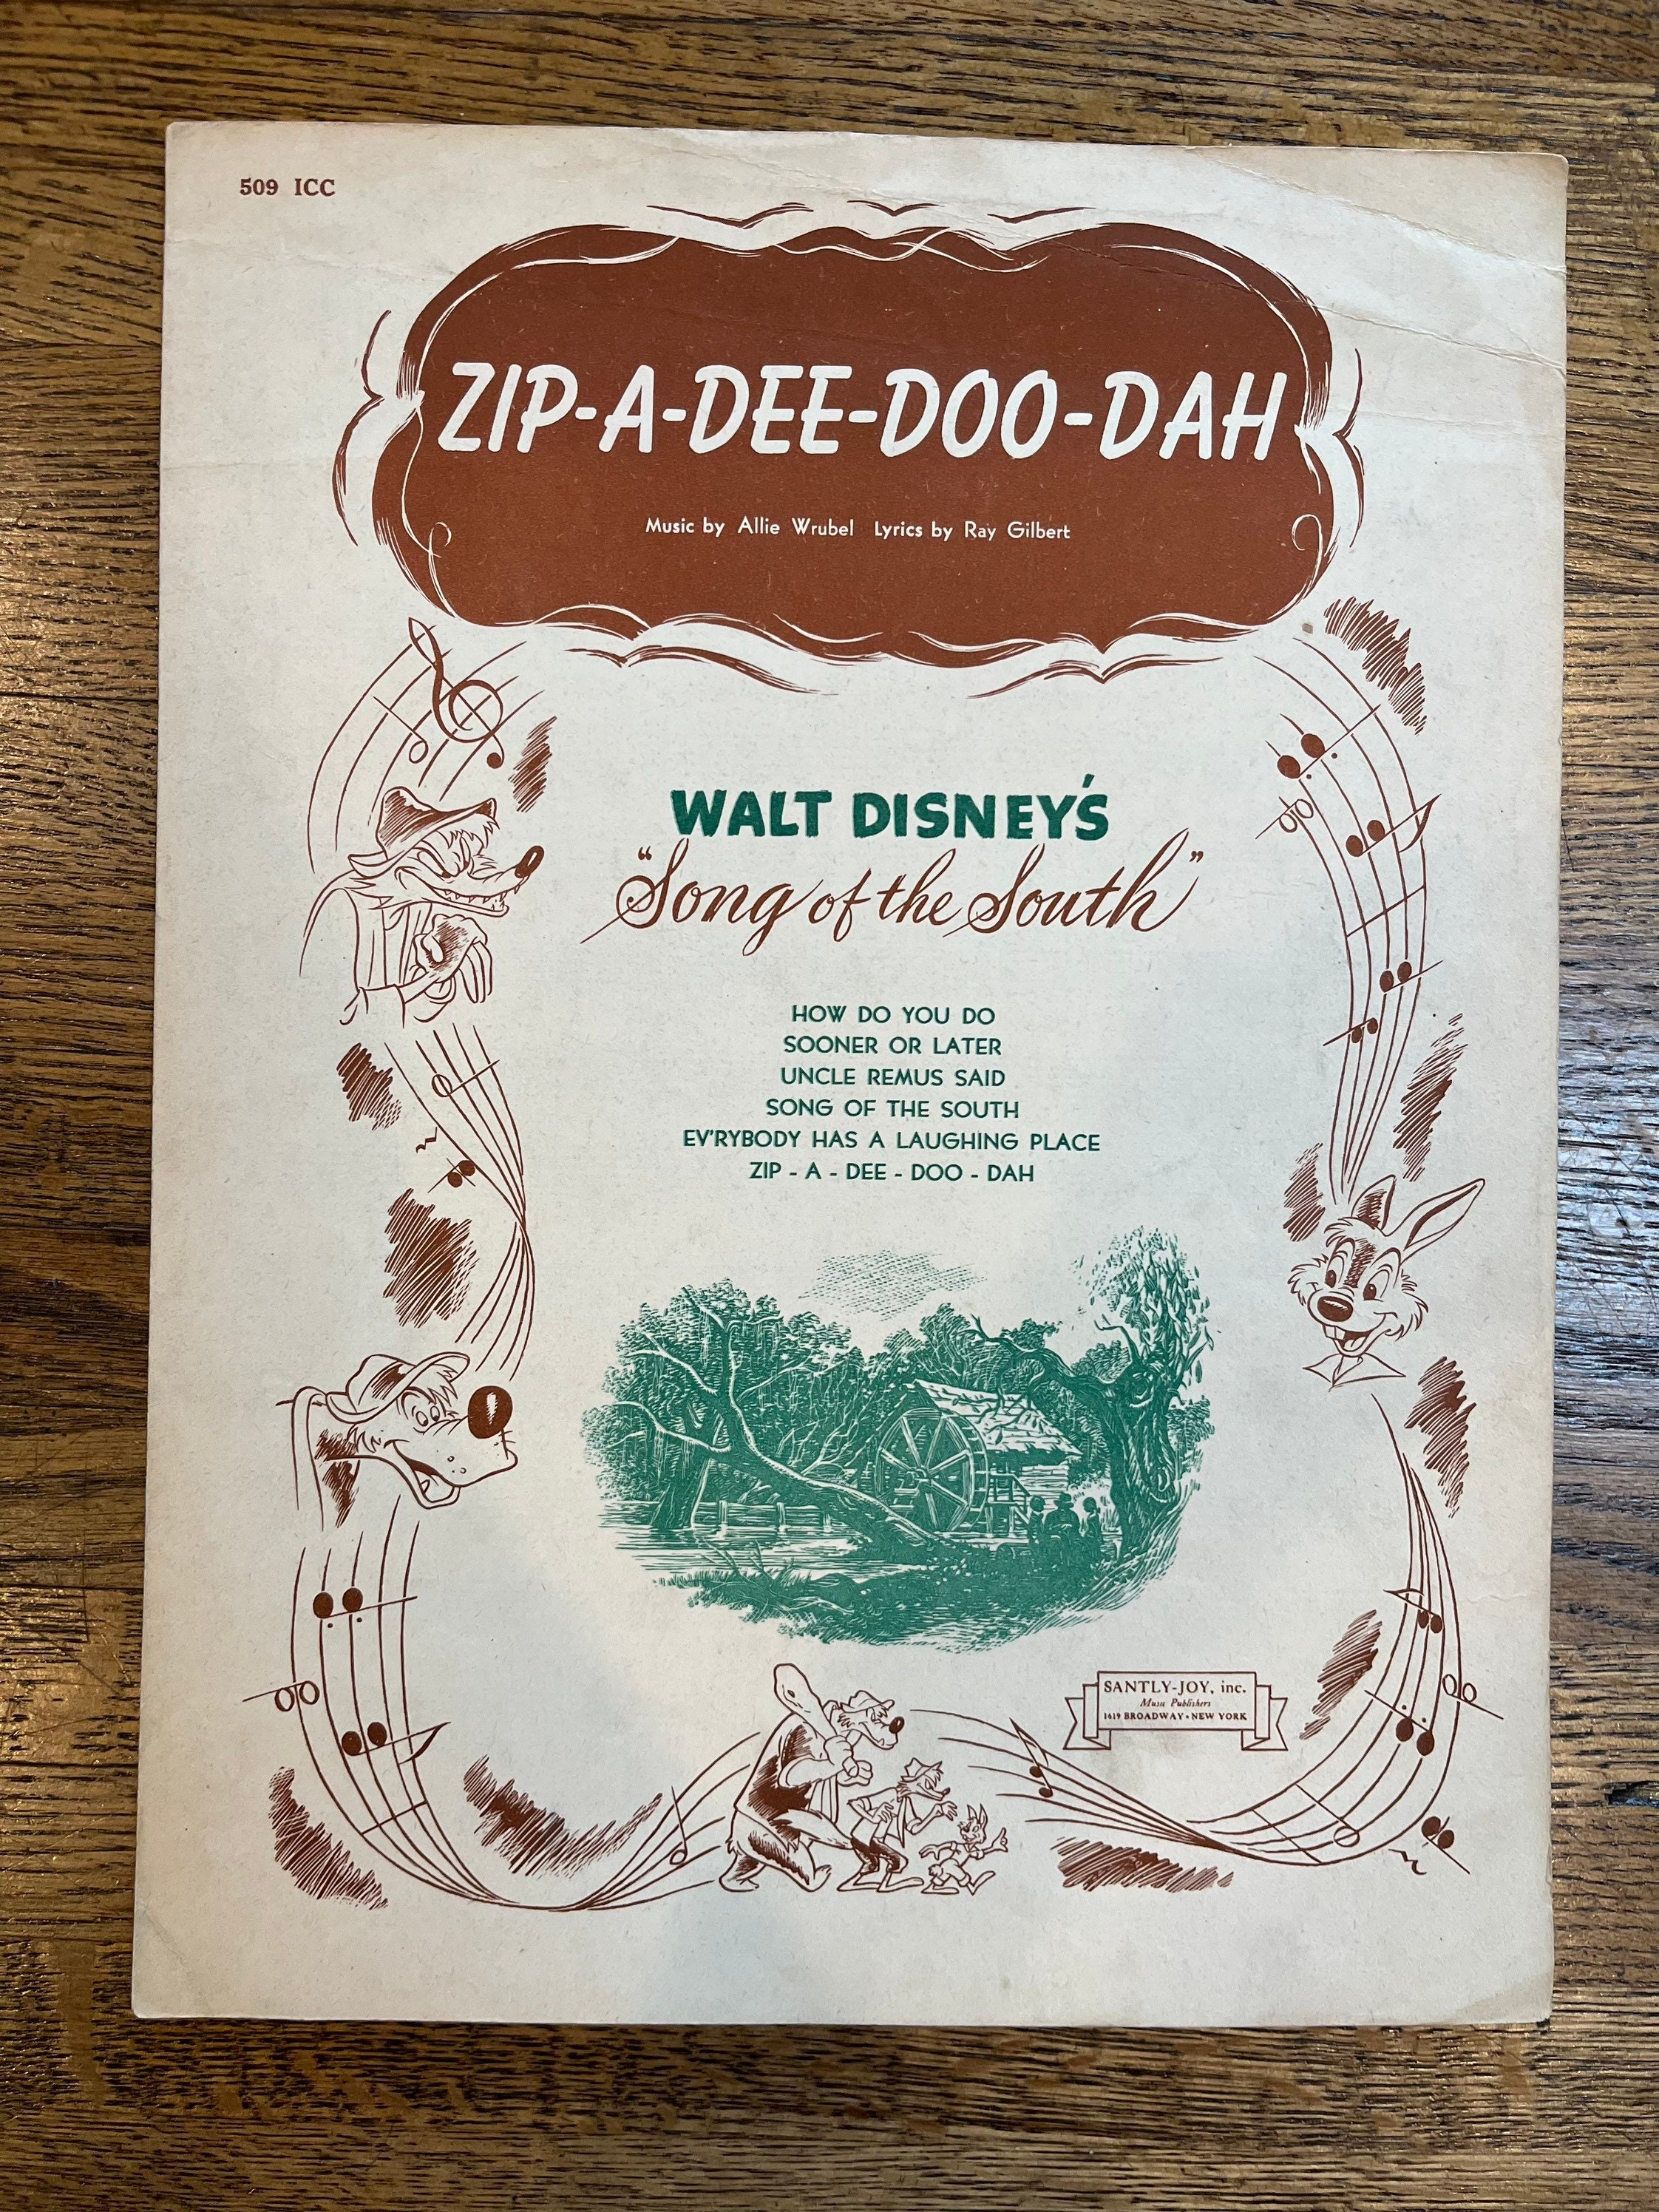 Vintage Disney Zip a Dee Doo Dah Ziplock Bag - Antiques & Collectibles, Facebook Marketplace